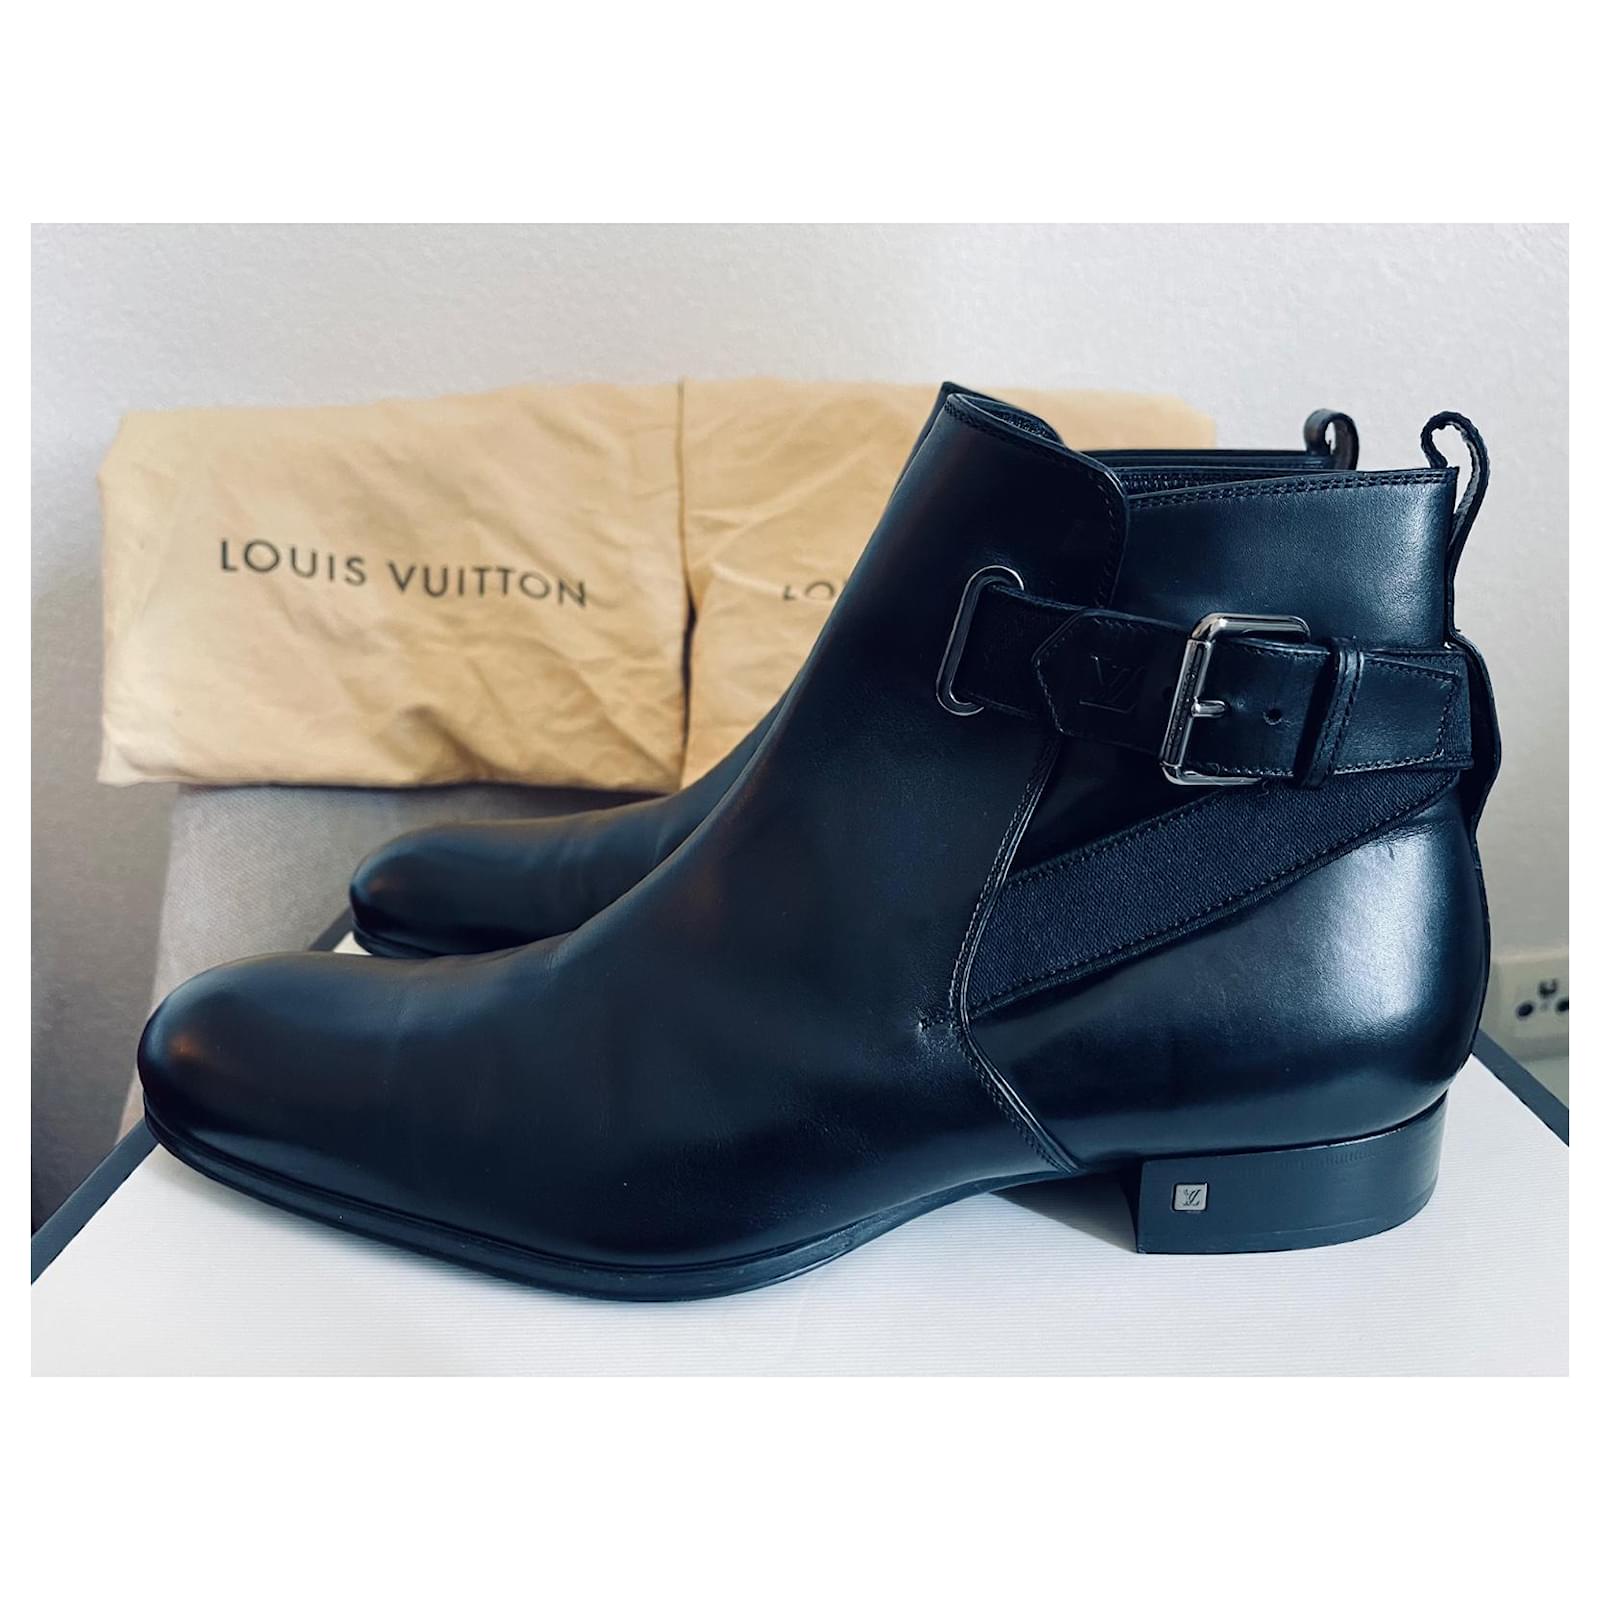 Louis Vuitton Men's Chelsea Boots